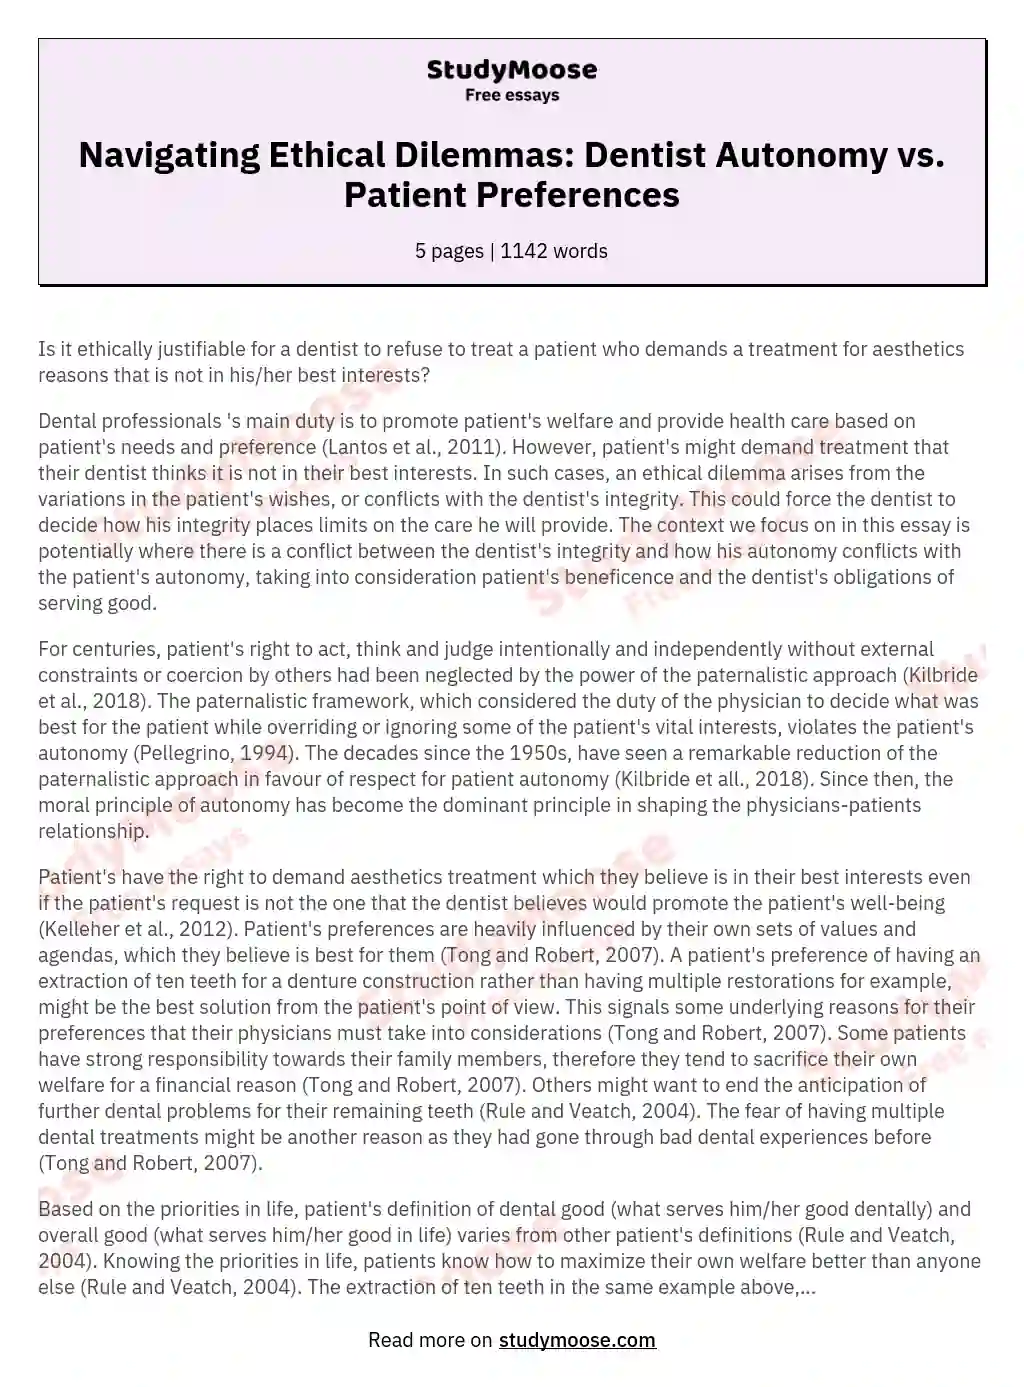 Navigating Ethical Dilemmas: Dentist Autonomy vs. Patient Preferences essay